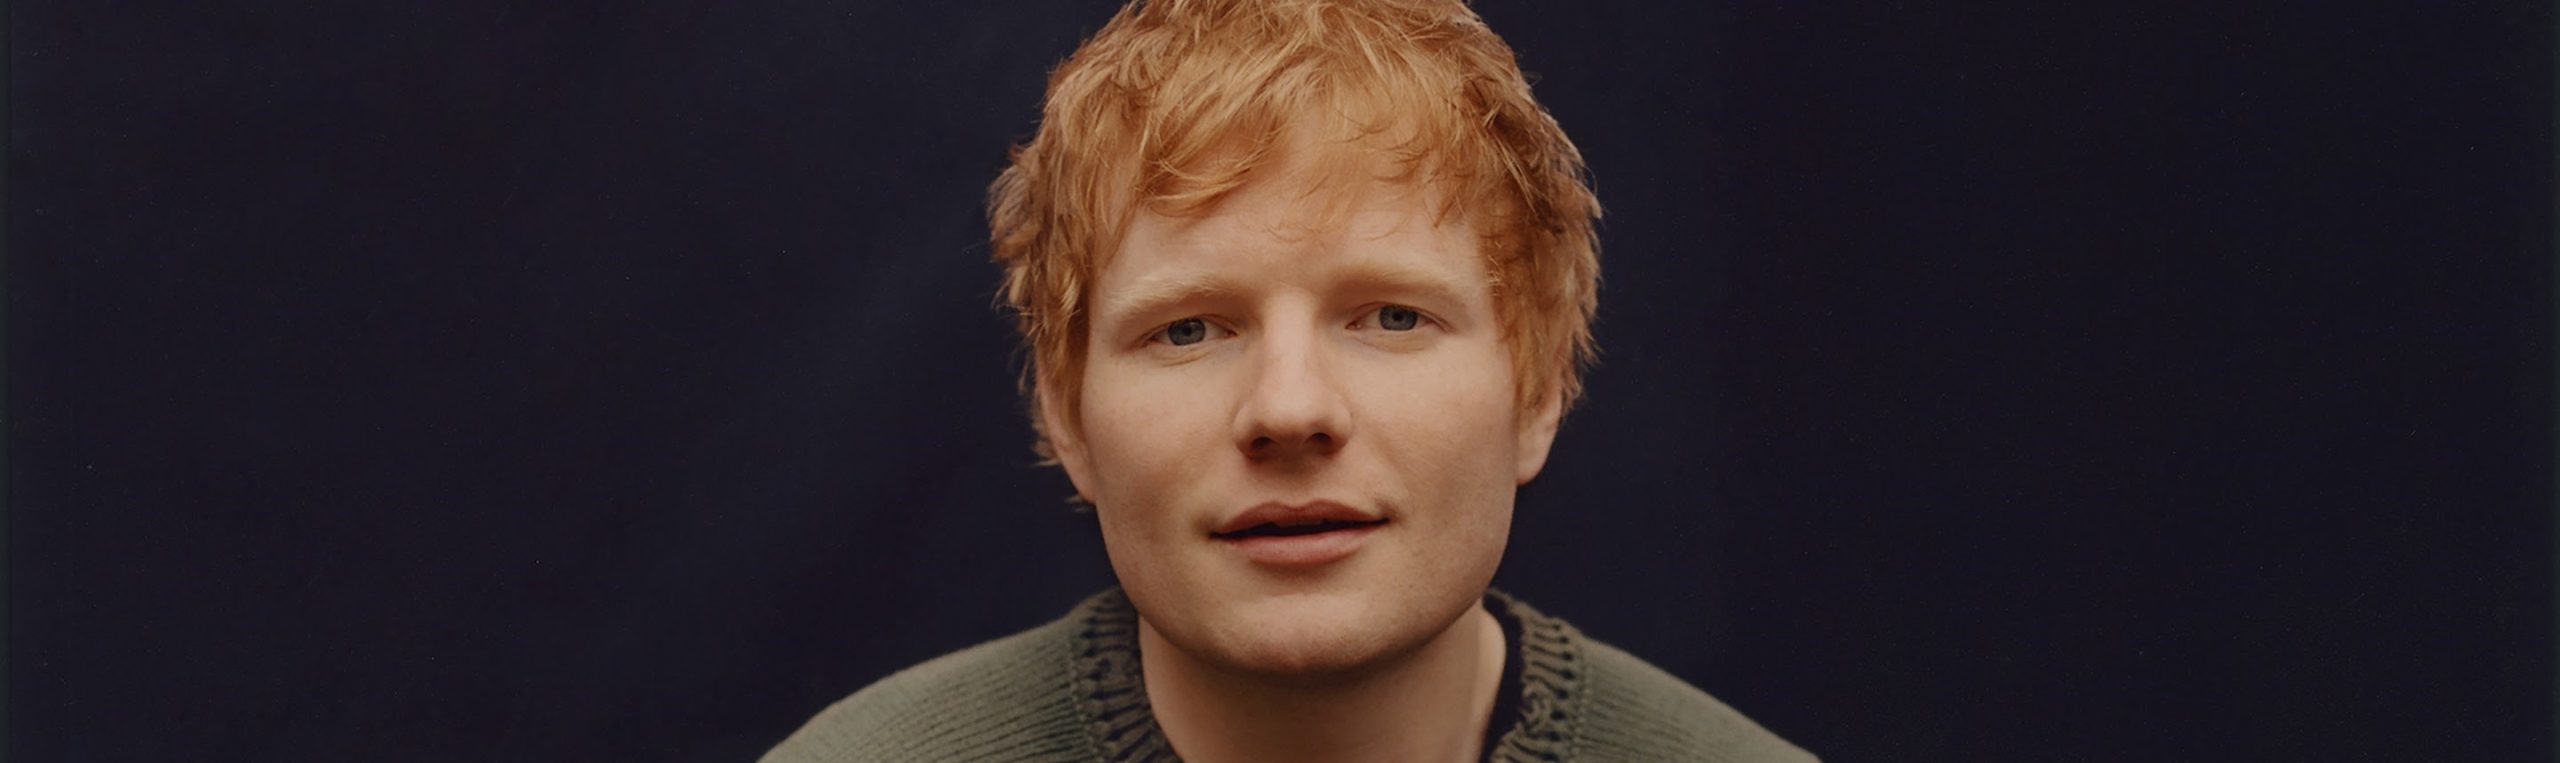 Ed Sheeran Biography, Age, Career & Personal Life